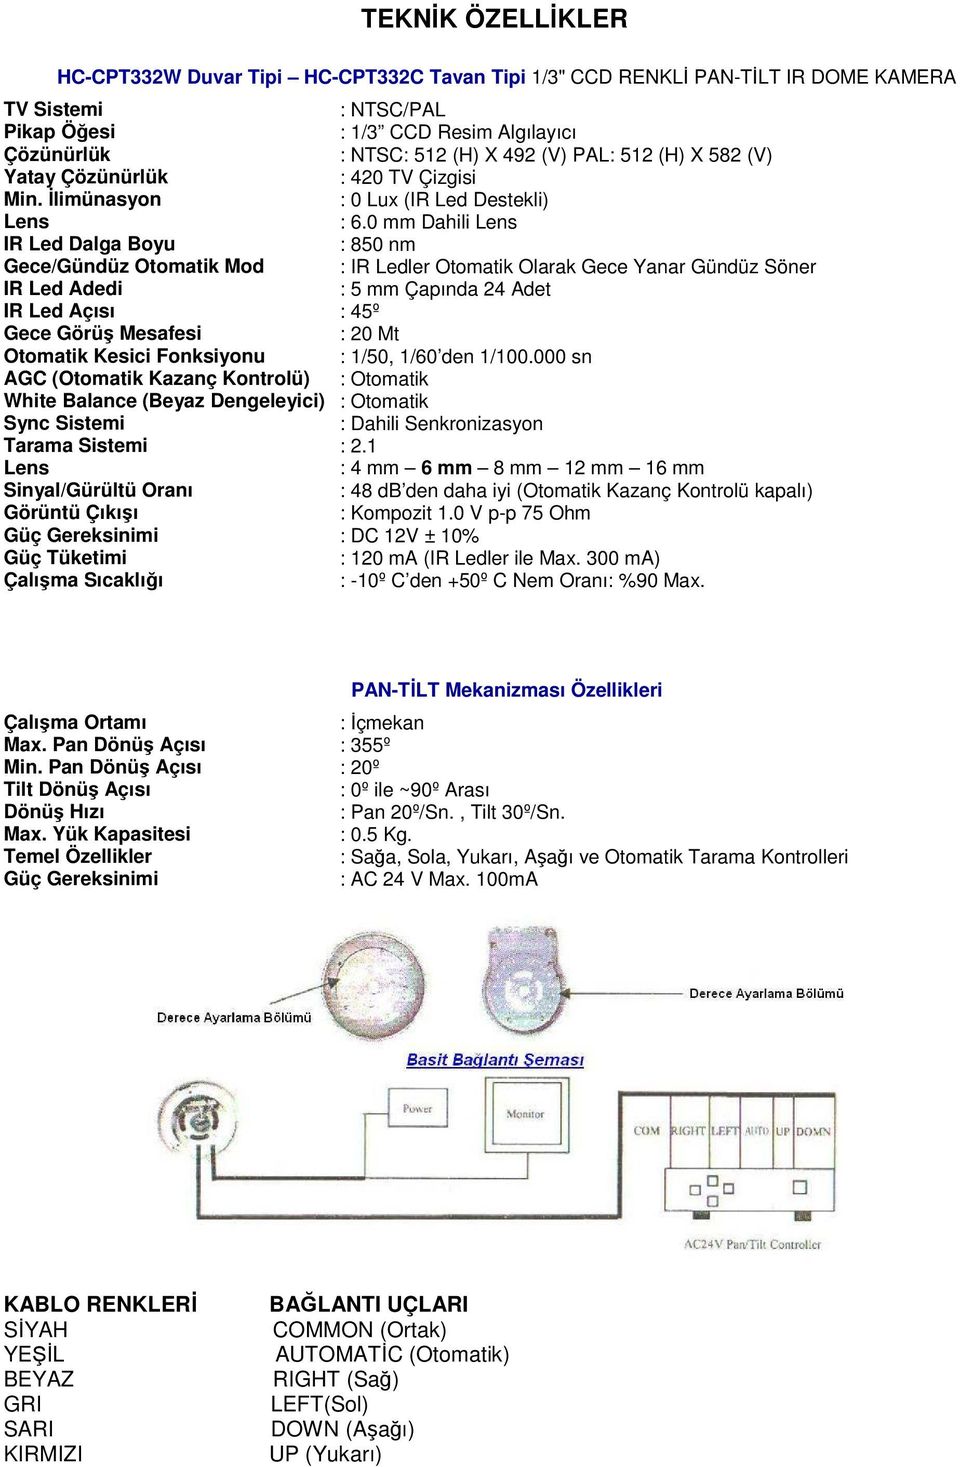 Sync Sistemi Tarama Sistemi Lens Sinyal/Gürültü Oranı Görüntü Çıkışı Güç Gereksinimi Güç Tüketimi Çalışma Sıcaklığı : NTSC/PAL : 1/3 CCD Resim Algılayıcı : NTSC: 512 (H) X 492 (V) PAL: 512 (H) X 582